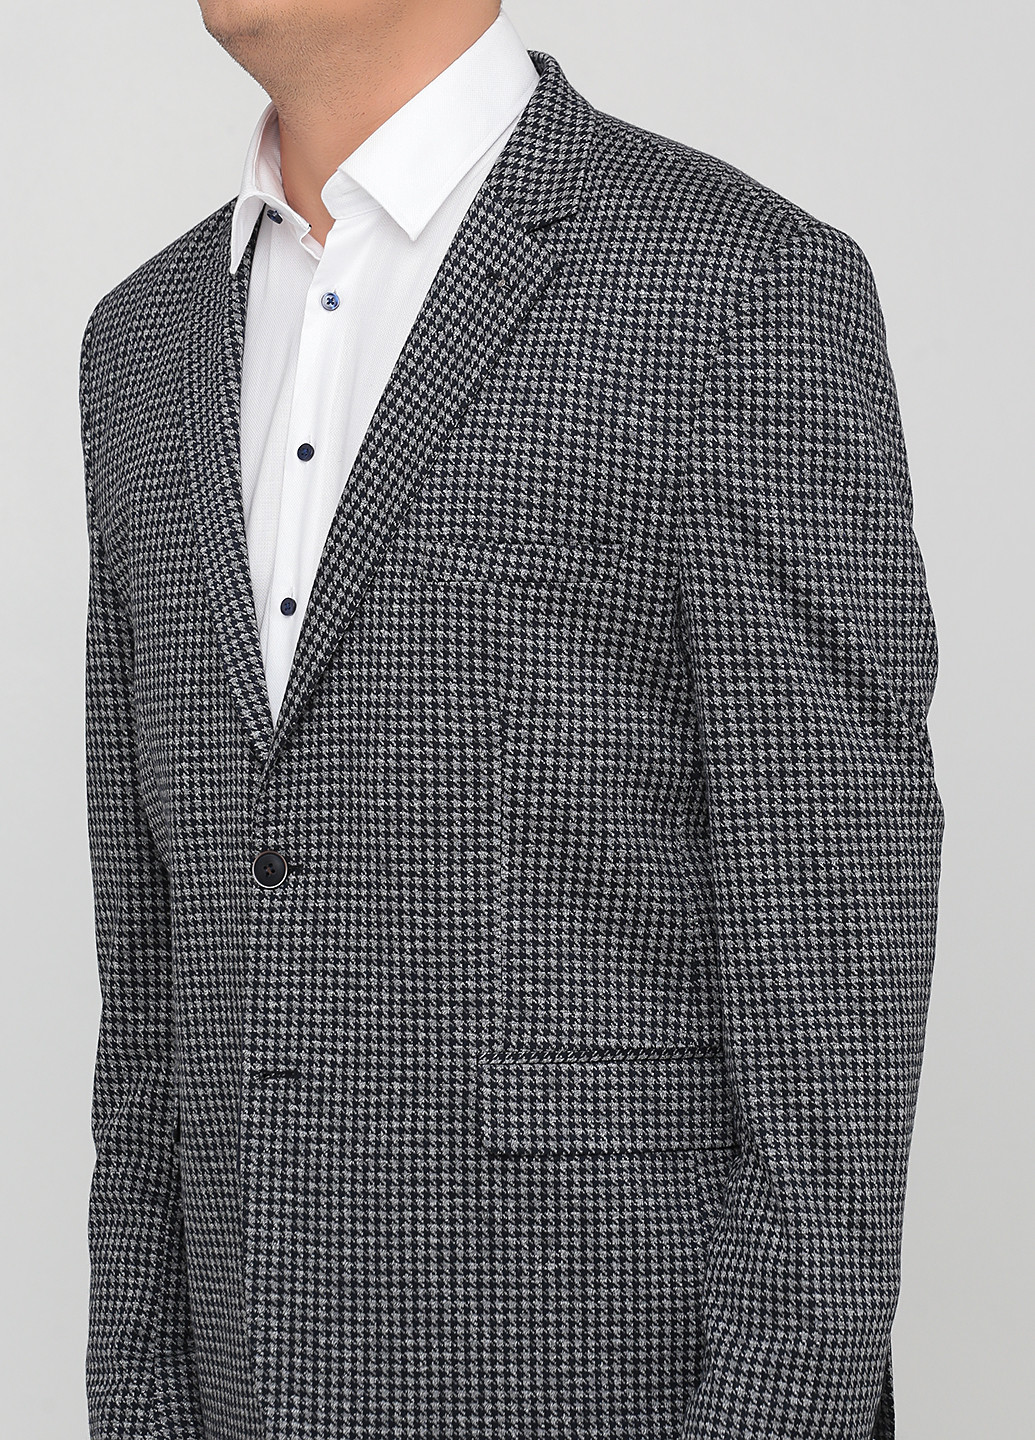 Пиджак Tony Cassano однобортный гусиная лапка светло-серый кэжуал хлопок